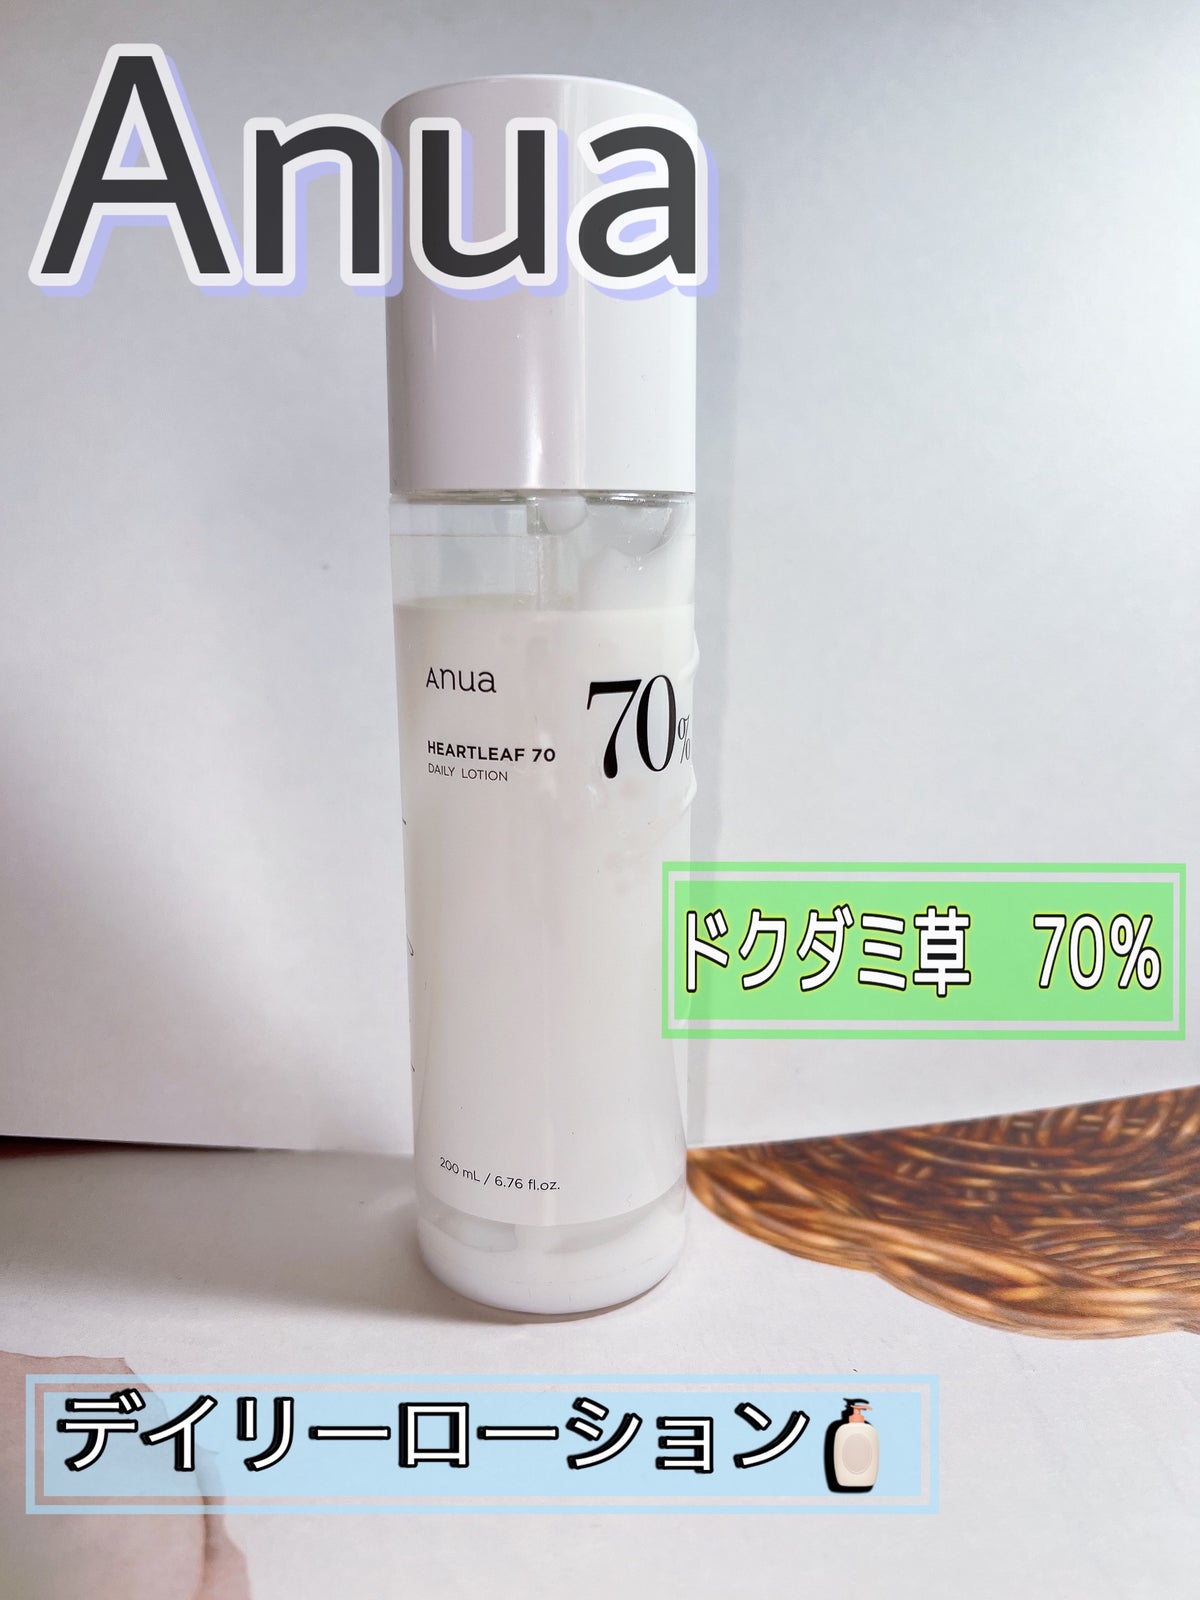 Anua 乳液ドクダミ70 デイリーローション - 乳液・ミルク